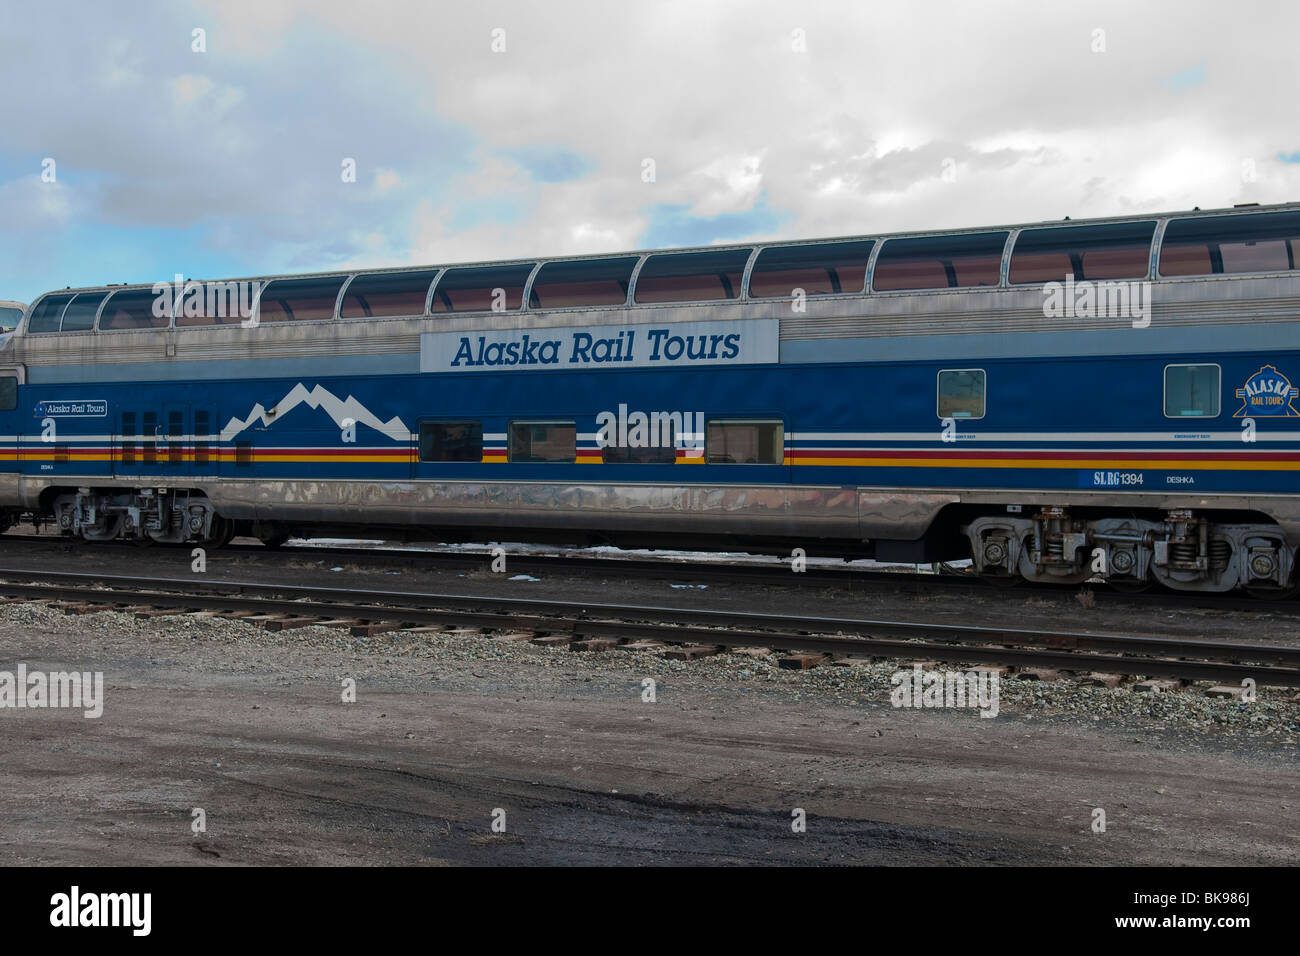 Rampa di Alaska Tours Scenic Railroad di automobili Foto Stock